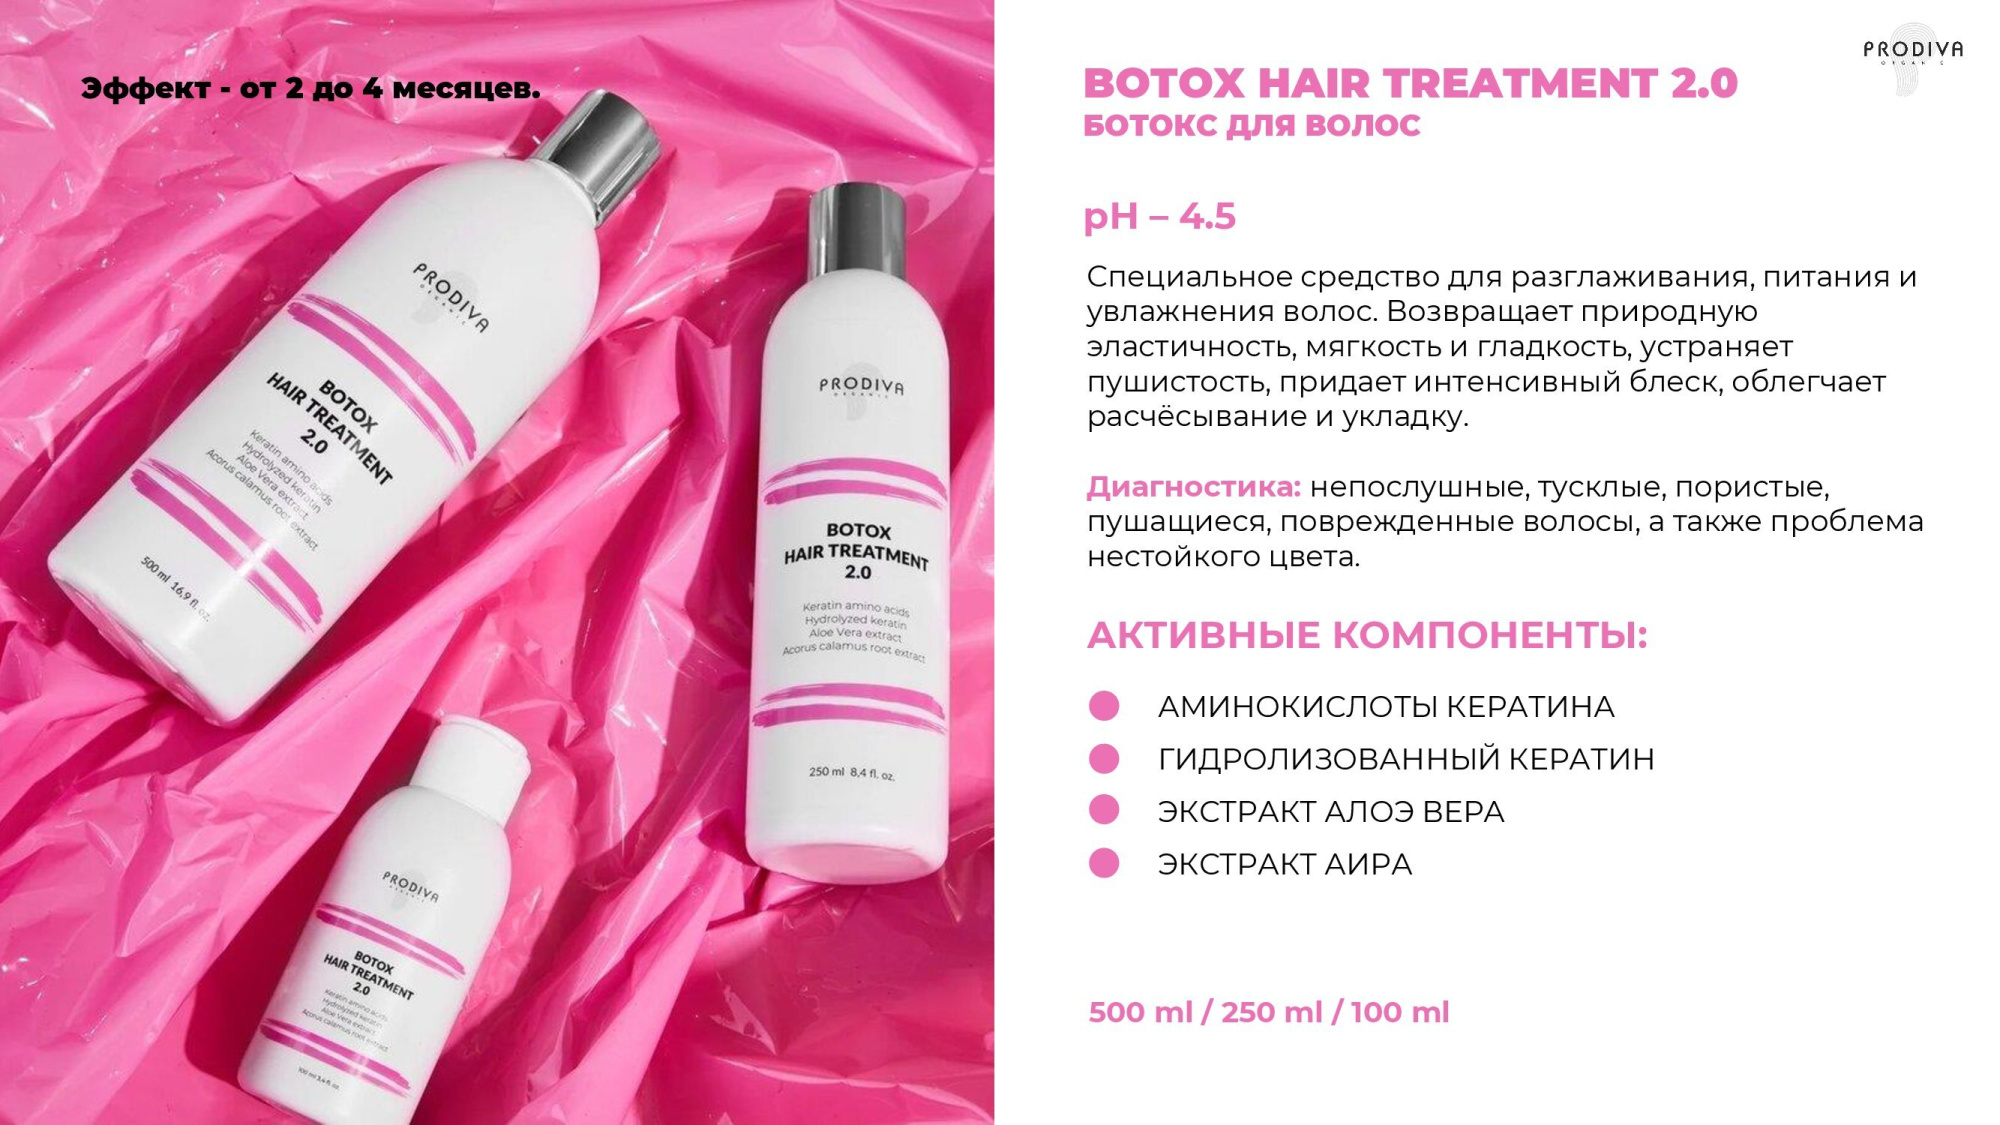 Глянцевый ботокс для волос PRODIVA Botox Hair Treatment 2.0, 250 мл